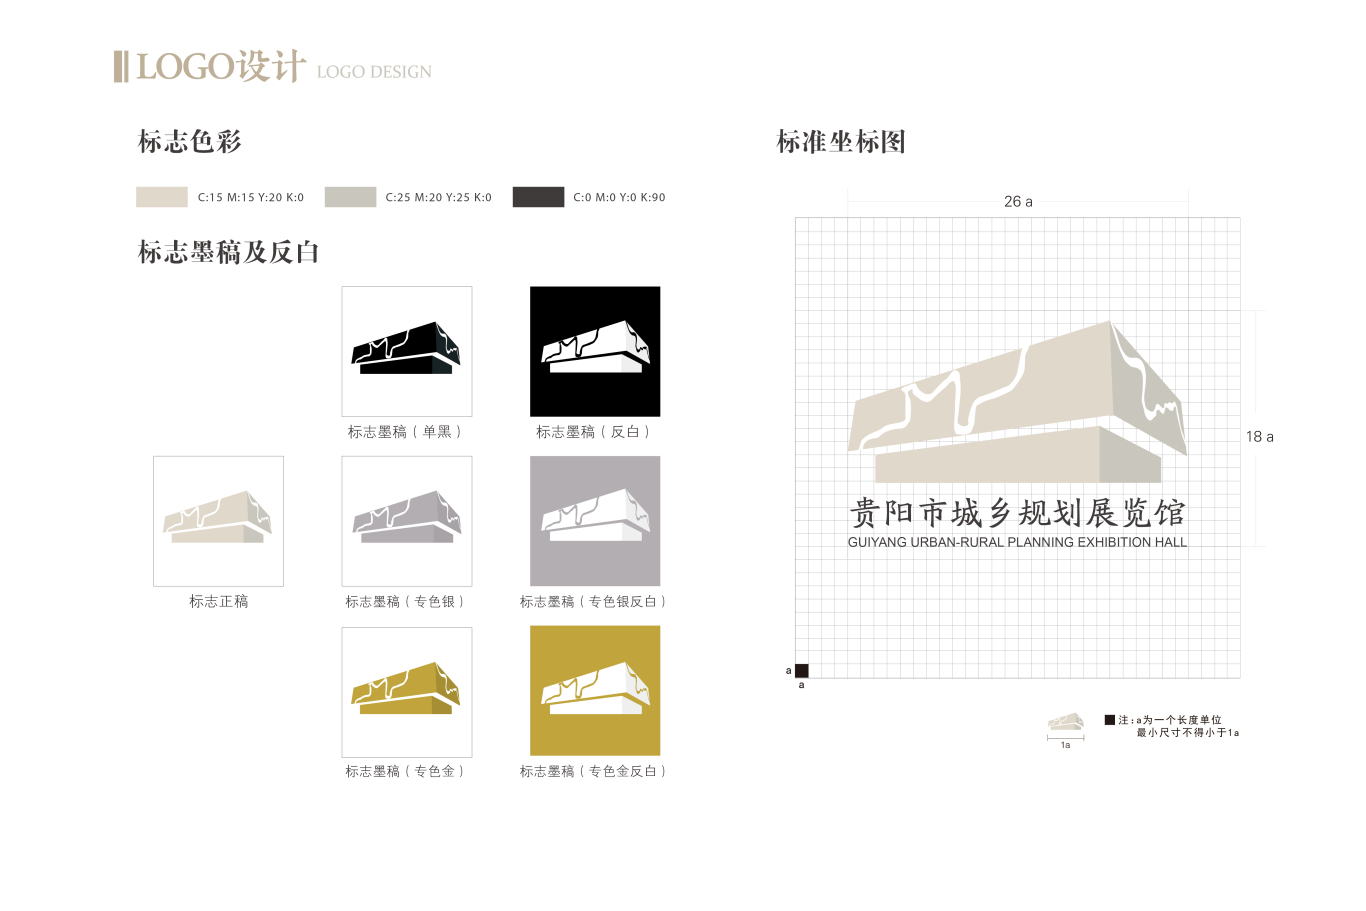 贵阳市城乡规划展览馆logo设计及VI系统应用图1